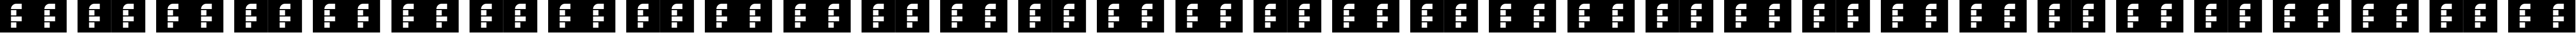 Пример написания русского алфавита шрифтом Gameplay Regular